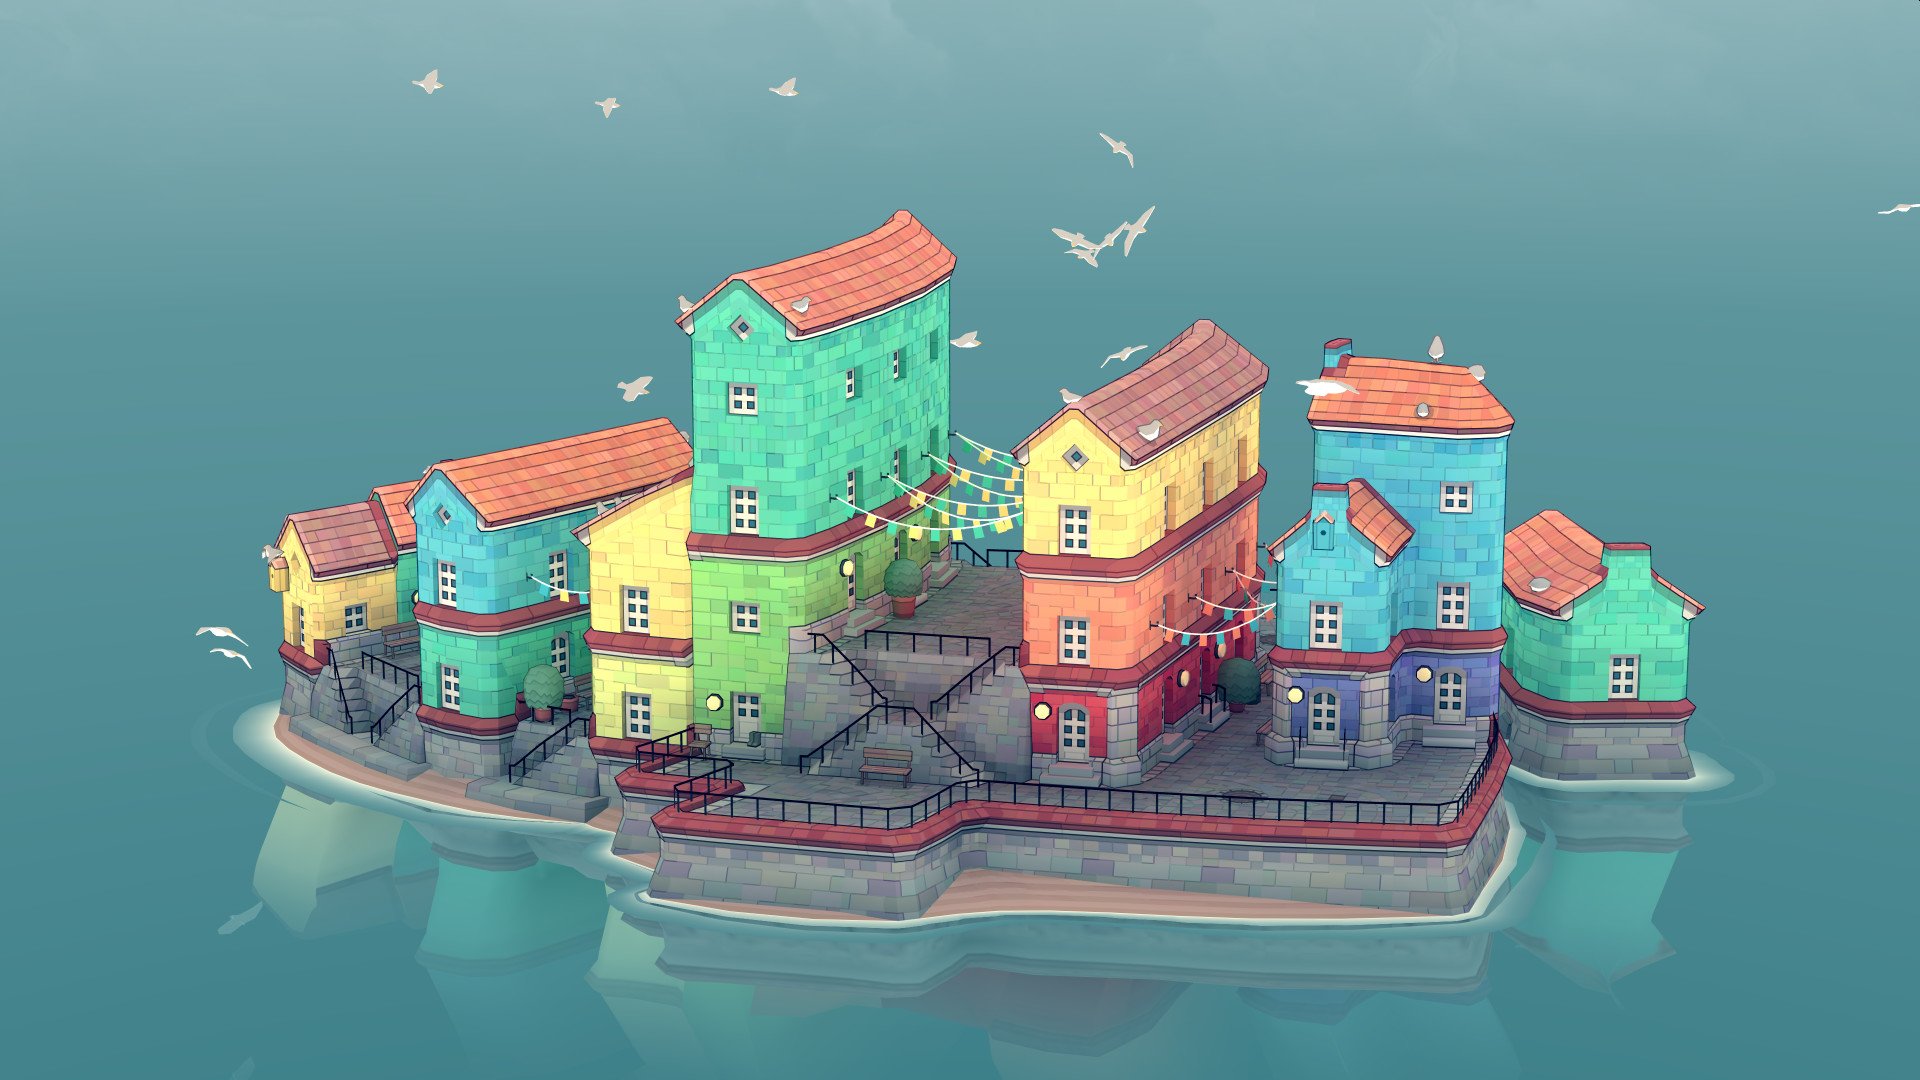 Townscaper, jogo relaxante de construção de cidades, é anunciado